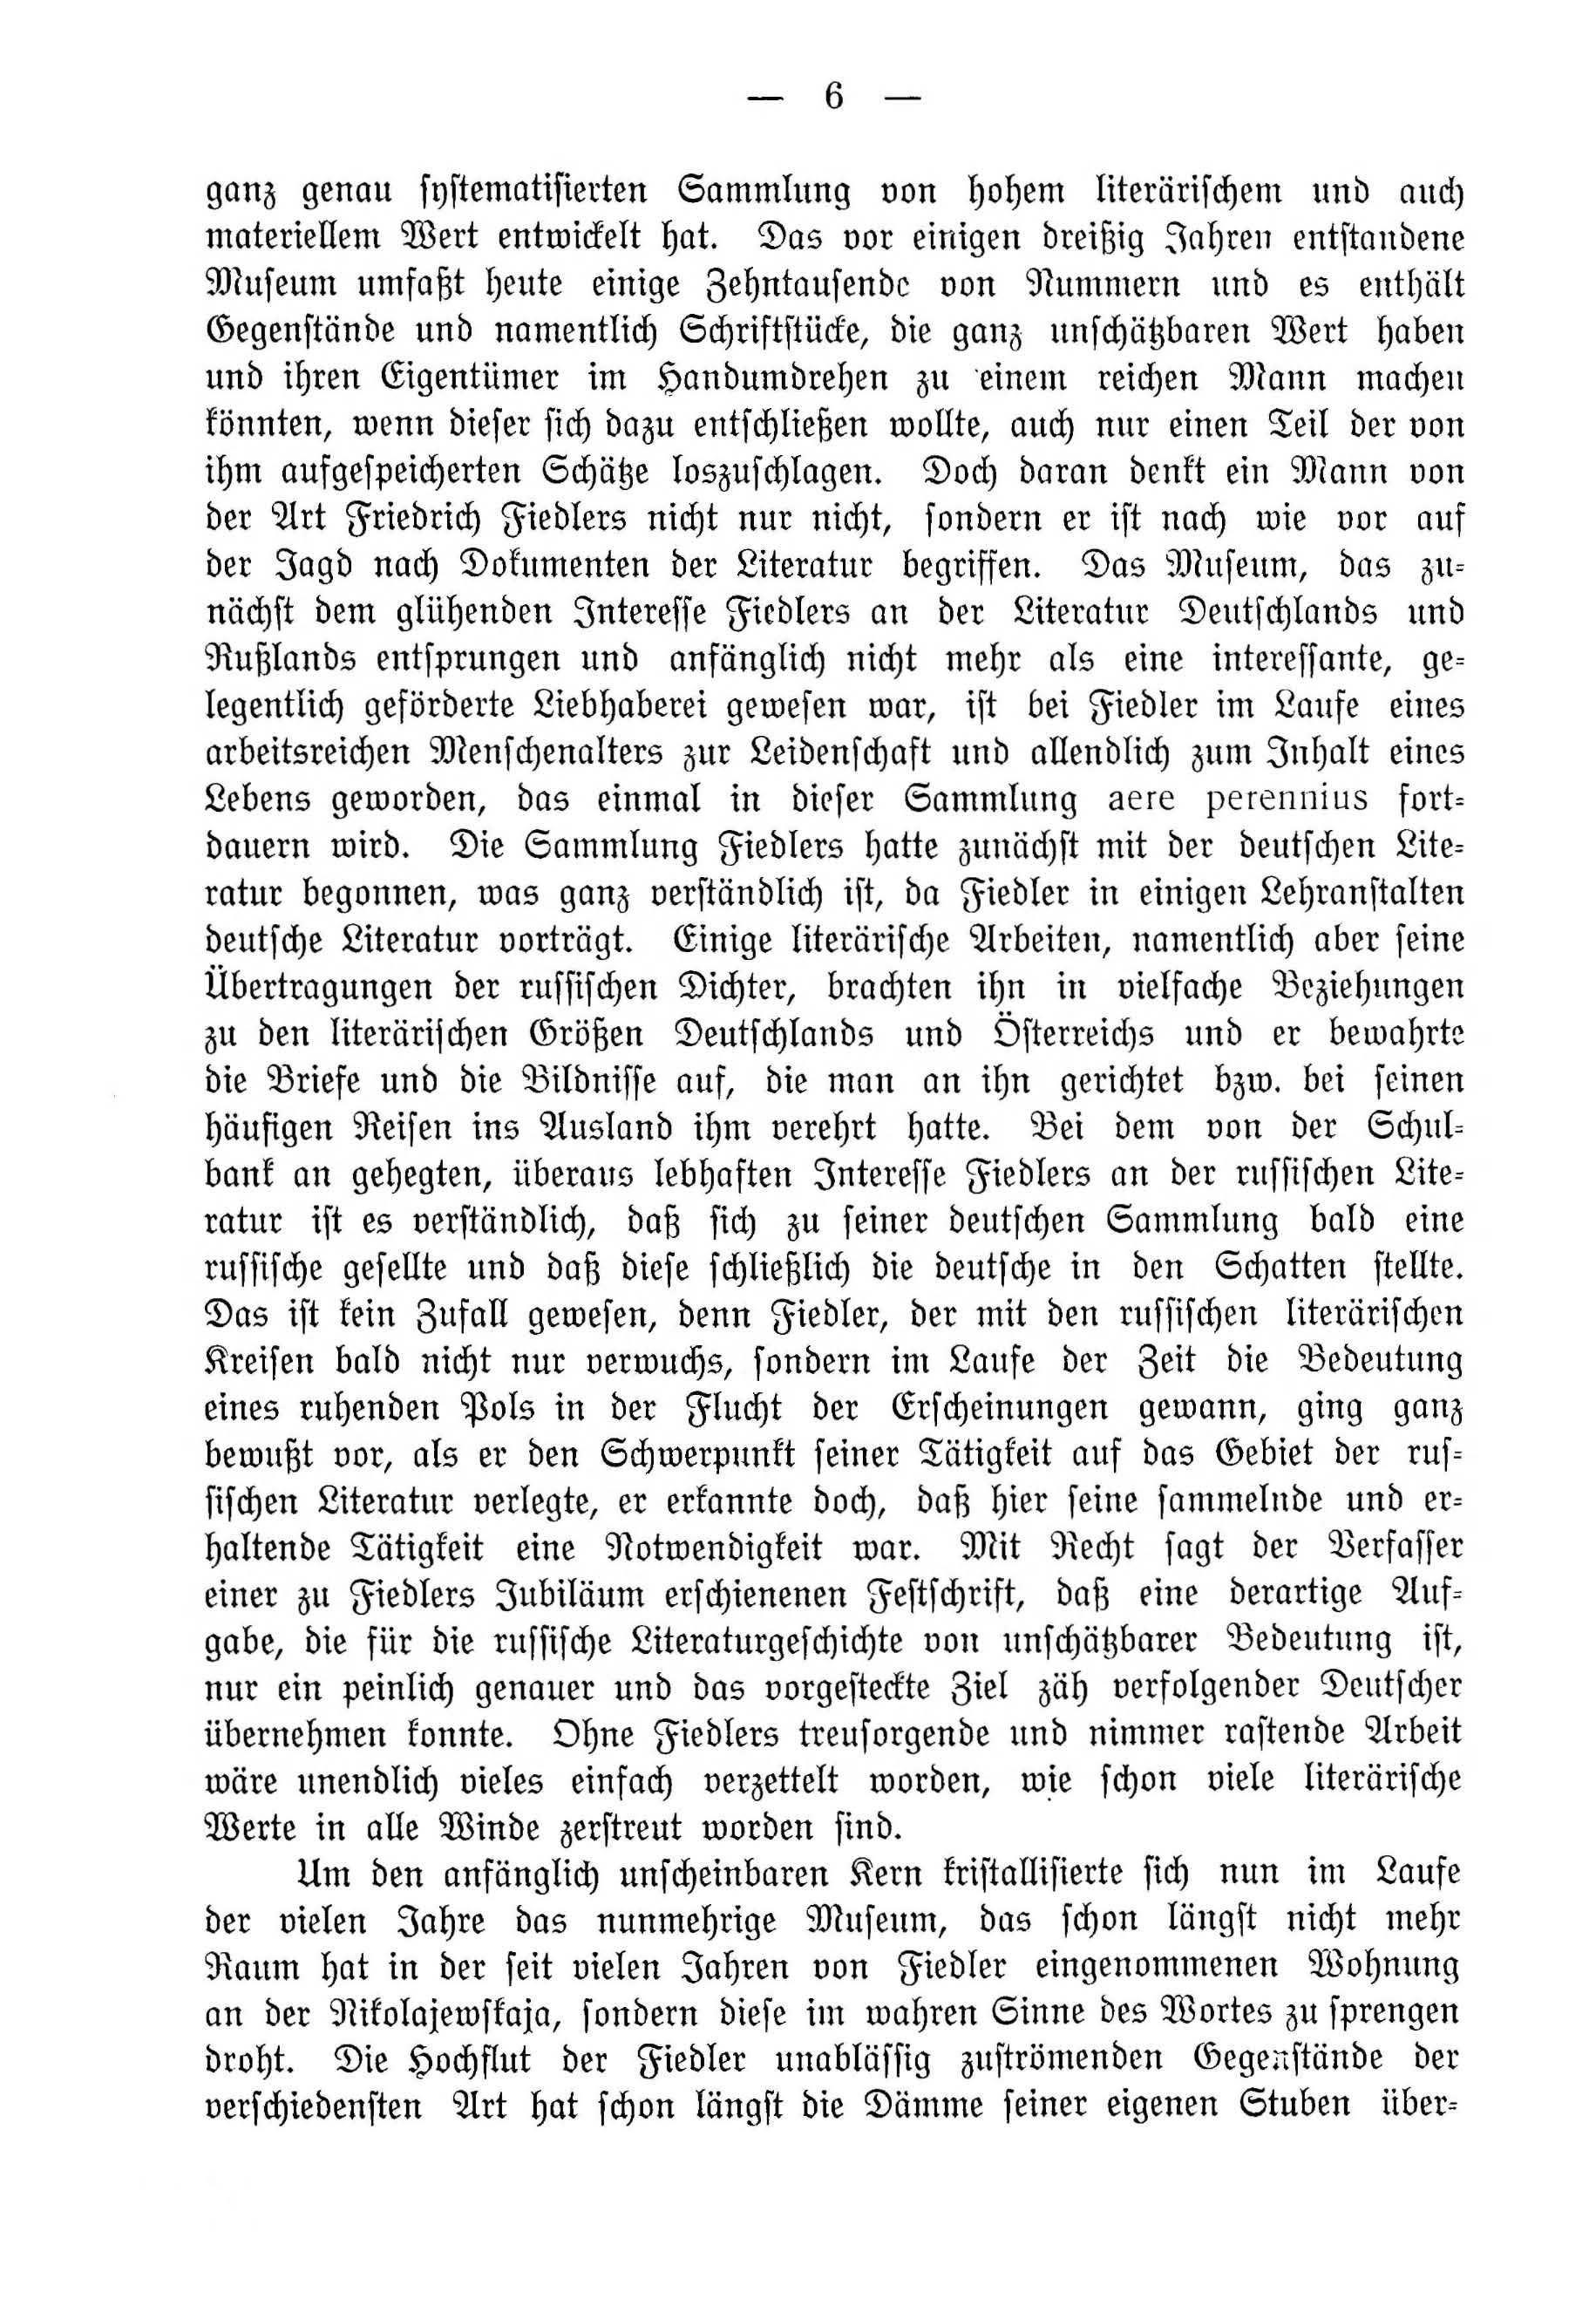 Deutsche Monatsschrift für Russland [4] (1915) | 6. (6) Main body of text